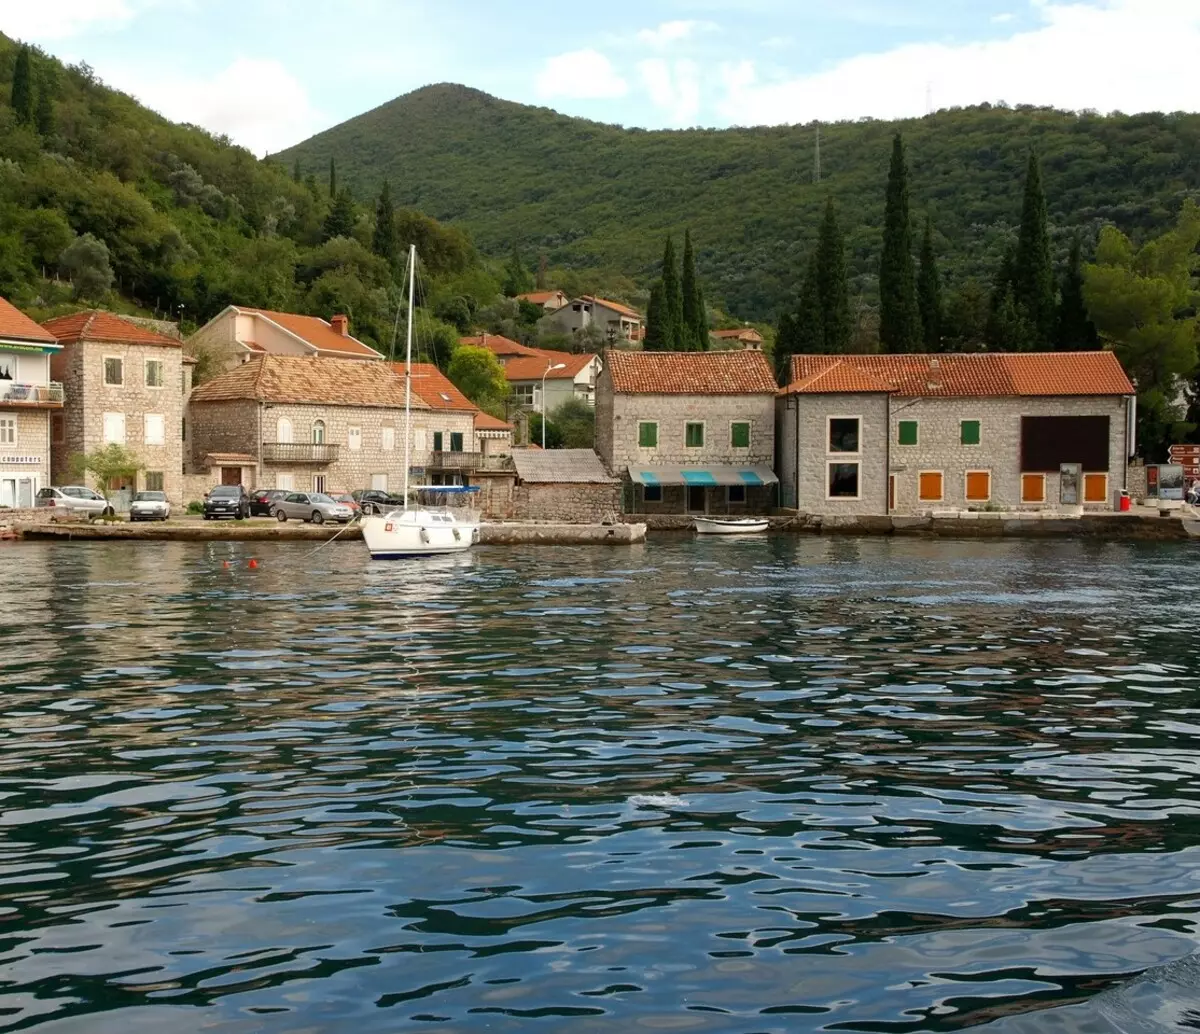 Che mare è il Montenegro? 56 Descrizione della foto del Mare Adriatico. Ha squali e ricci sea? 20554_53